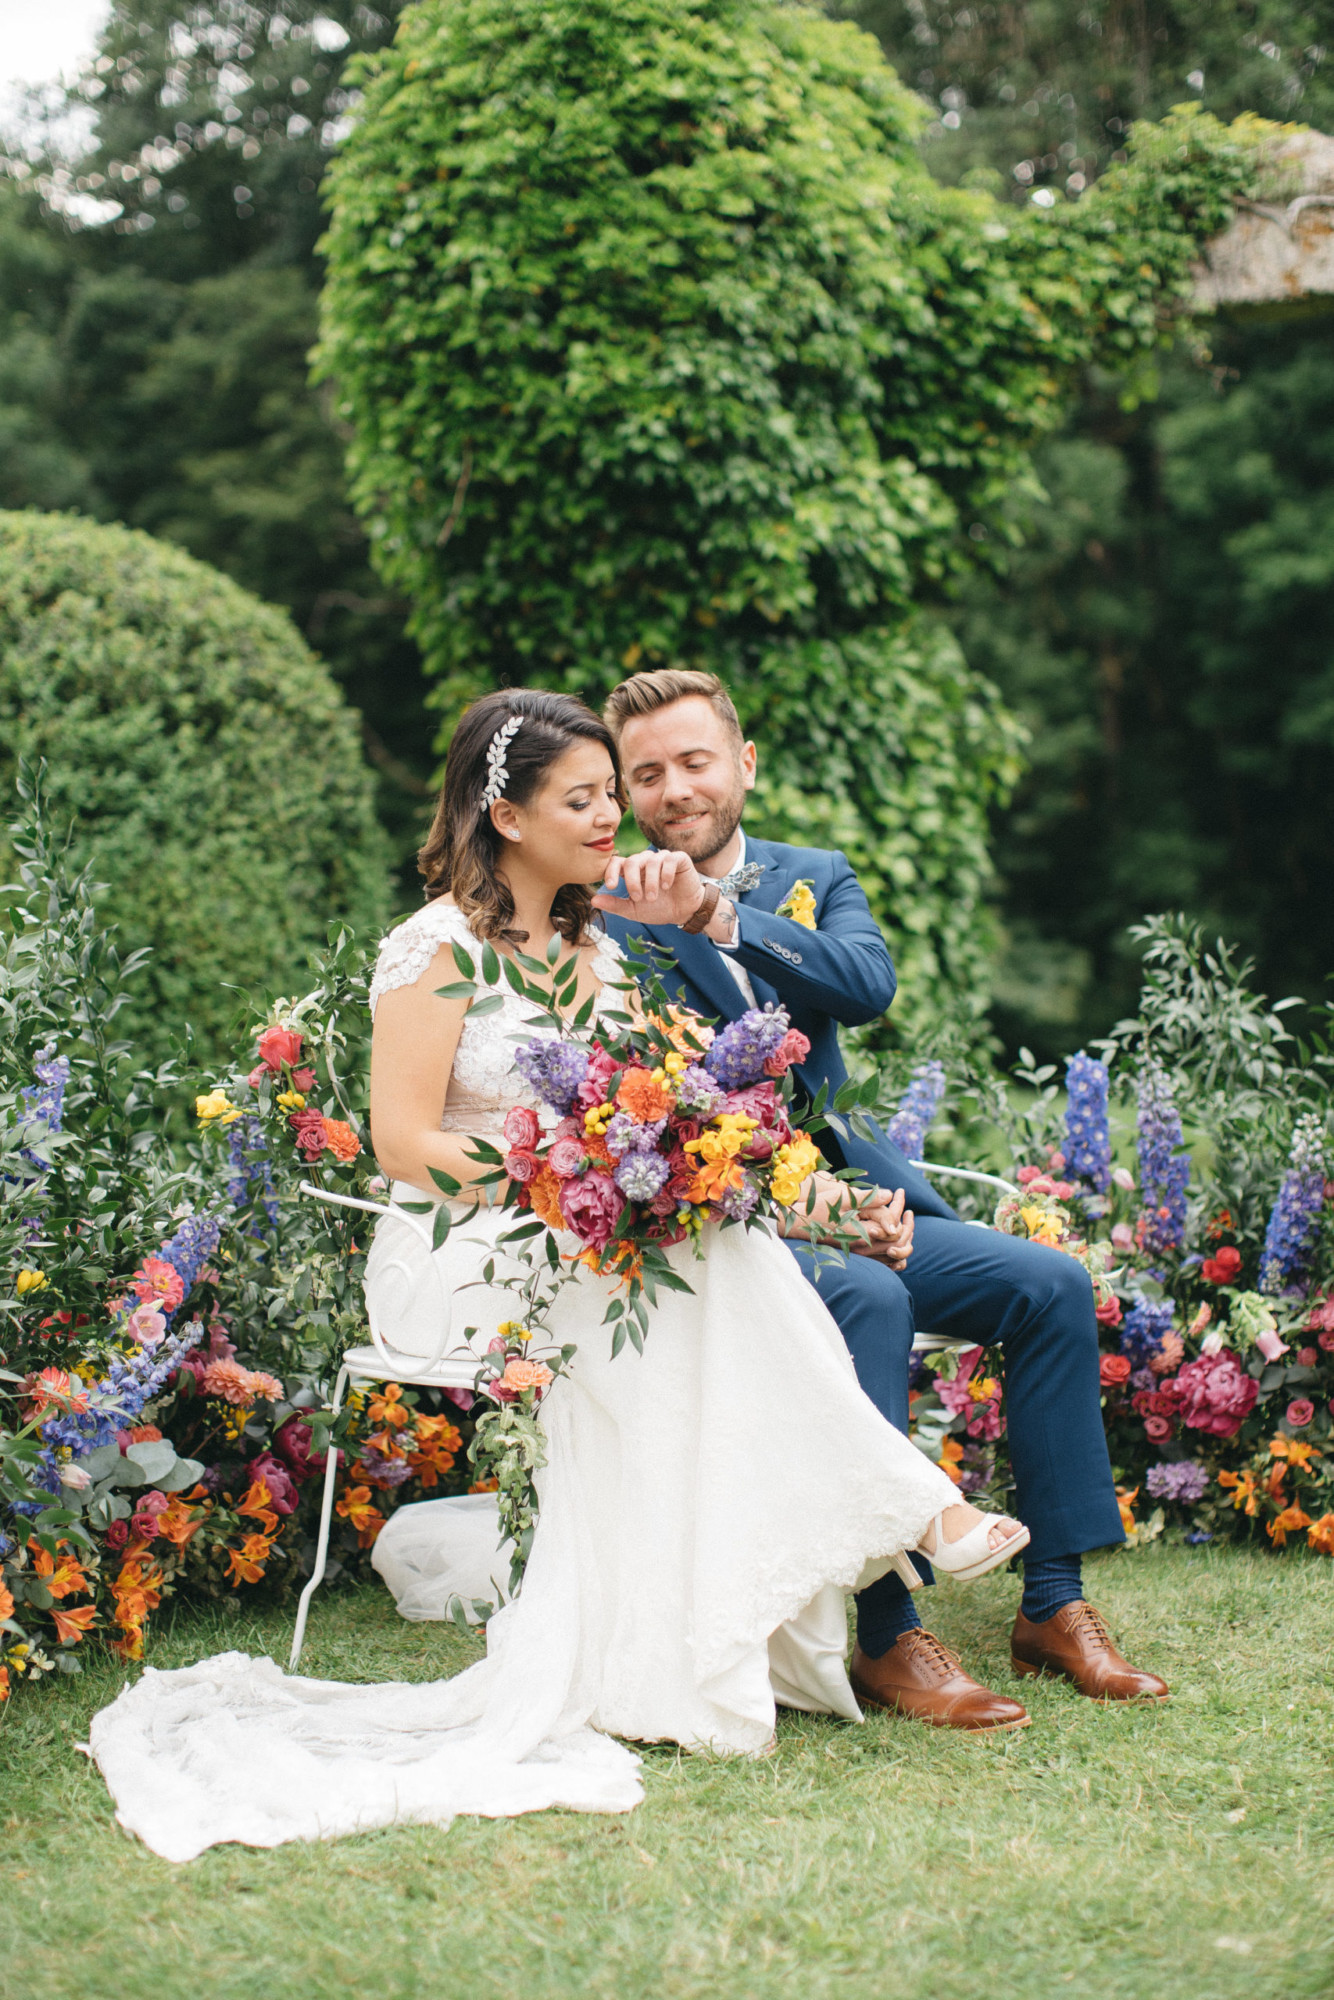 Mariage mixte, décoratrice, Paris, fleuriste, wedding designer floral designer, mariage château mariage élégant, cérémonie